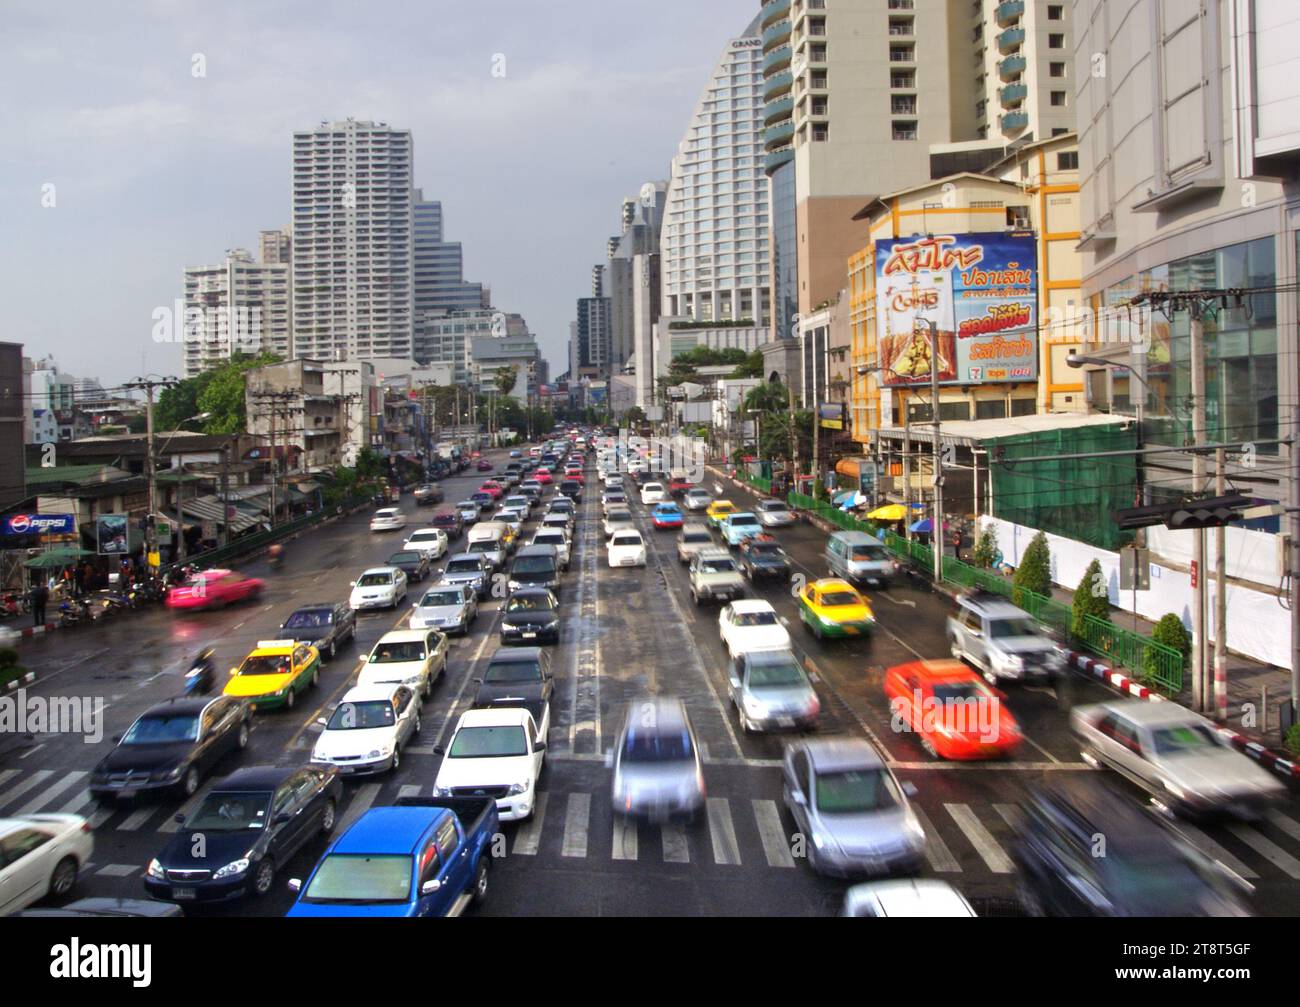 Bangkok Traffic, Bangkok ist eine der am meisten überlasteten Städte der Welt, mit schweren Verkehrsproblemen, die es zu einer Herausforderung machen, die Stadt während der Hauptverkehrszeiten zu erkunden. Egal, ob Sie Bangkok besuchen oder langfristig bleiben möchten, das Verständnis des Verkehrs ist entscheidend für eine schnelle Fortbewegung Stockfoto